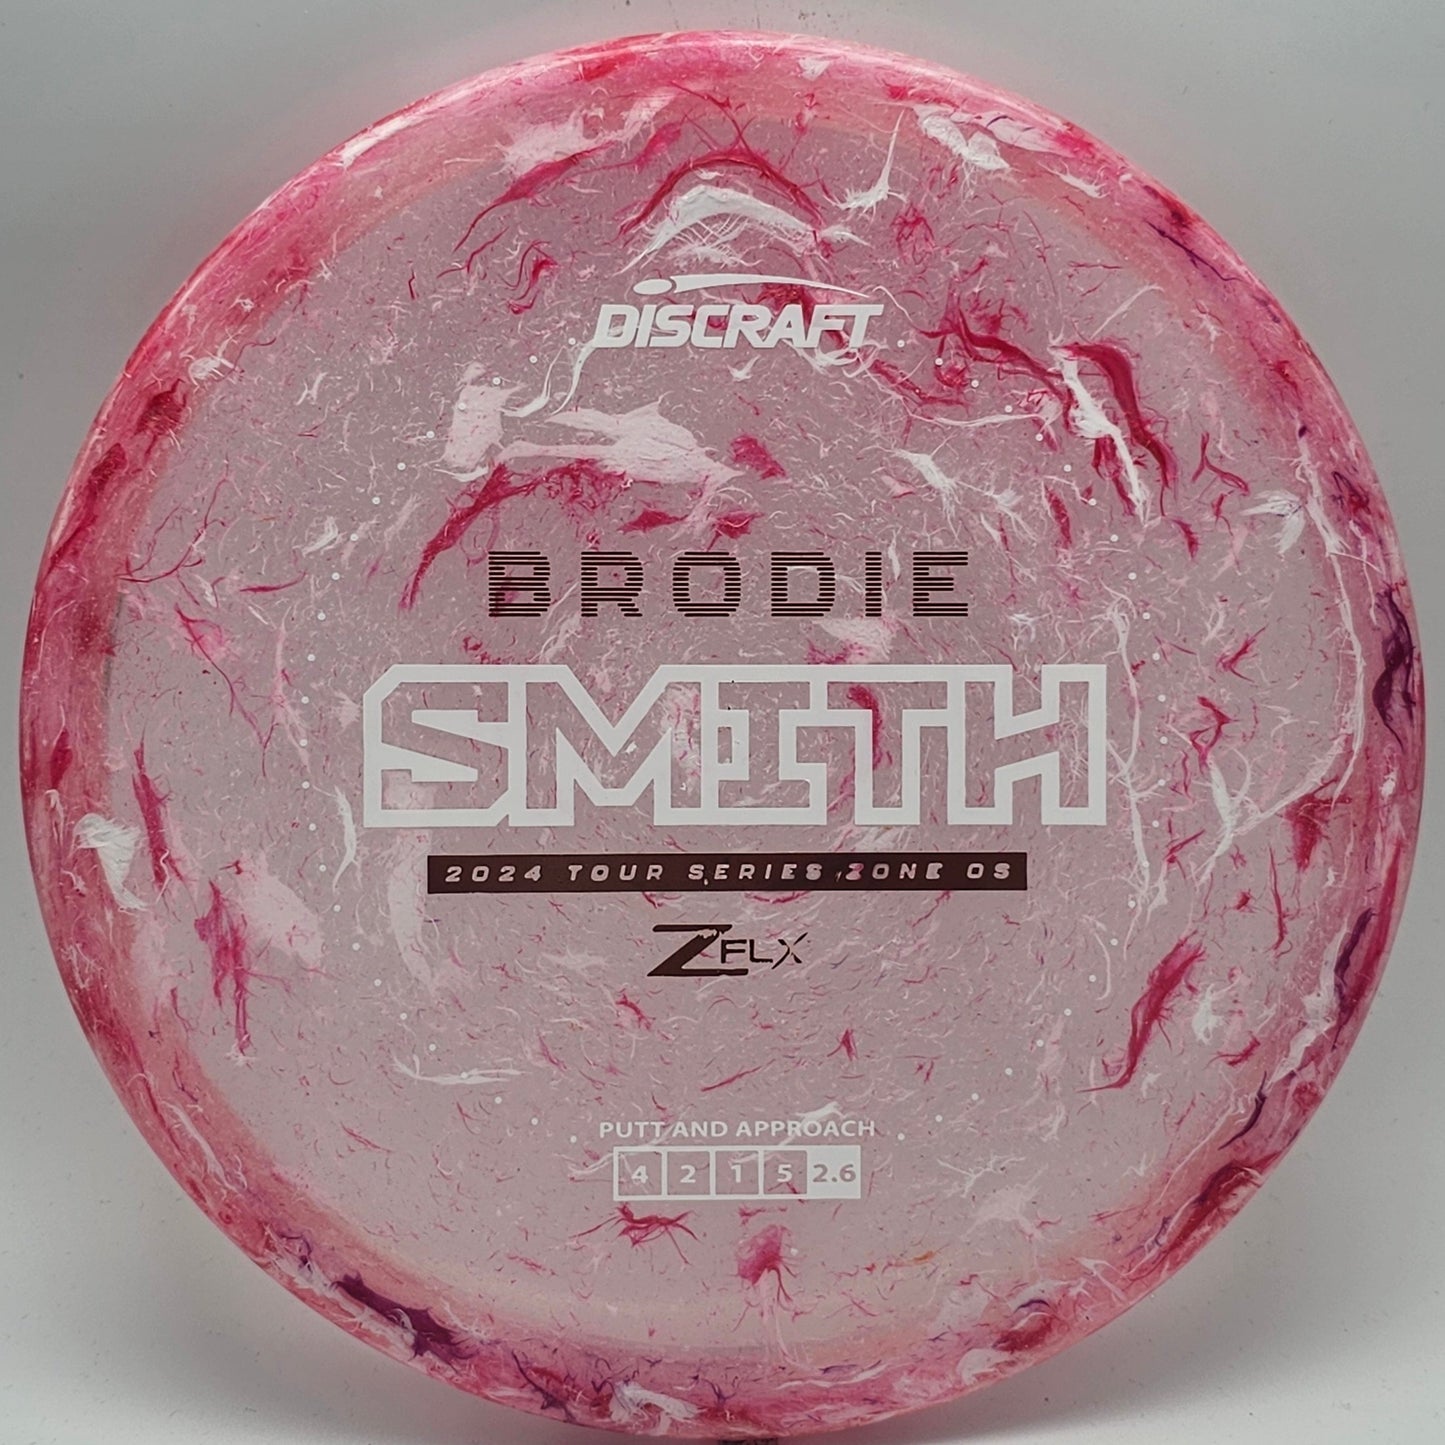 Discraft Brodie Smith Zone OS - Tour Series 2024